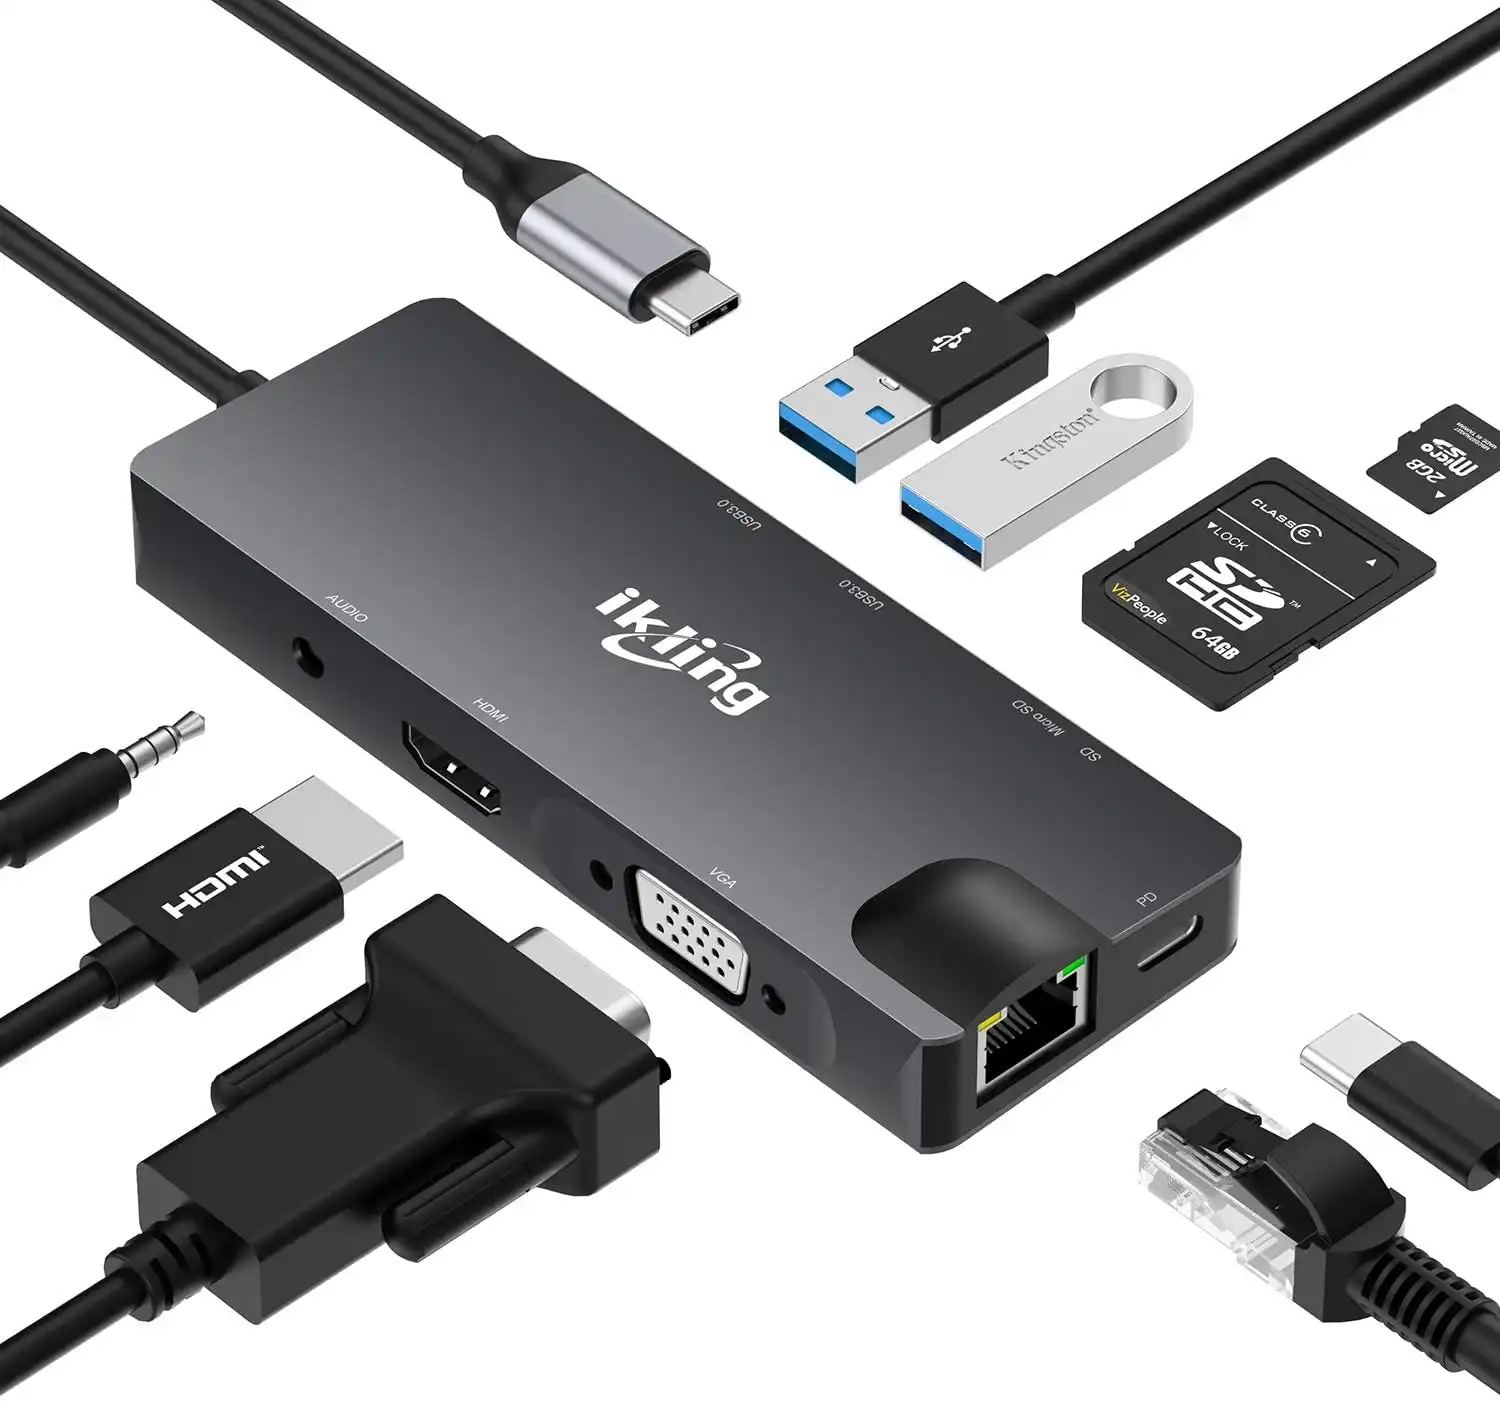 ikling USB C Hub, 9-in-1 USB C Adapter with 4K USB C to HDMI,VGA, USB C Charging, 2 USB 3.0, SD/TF Card Reader, USB C to 3.5mm, Gigabit Ethernet, USB